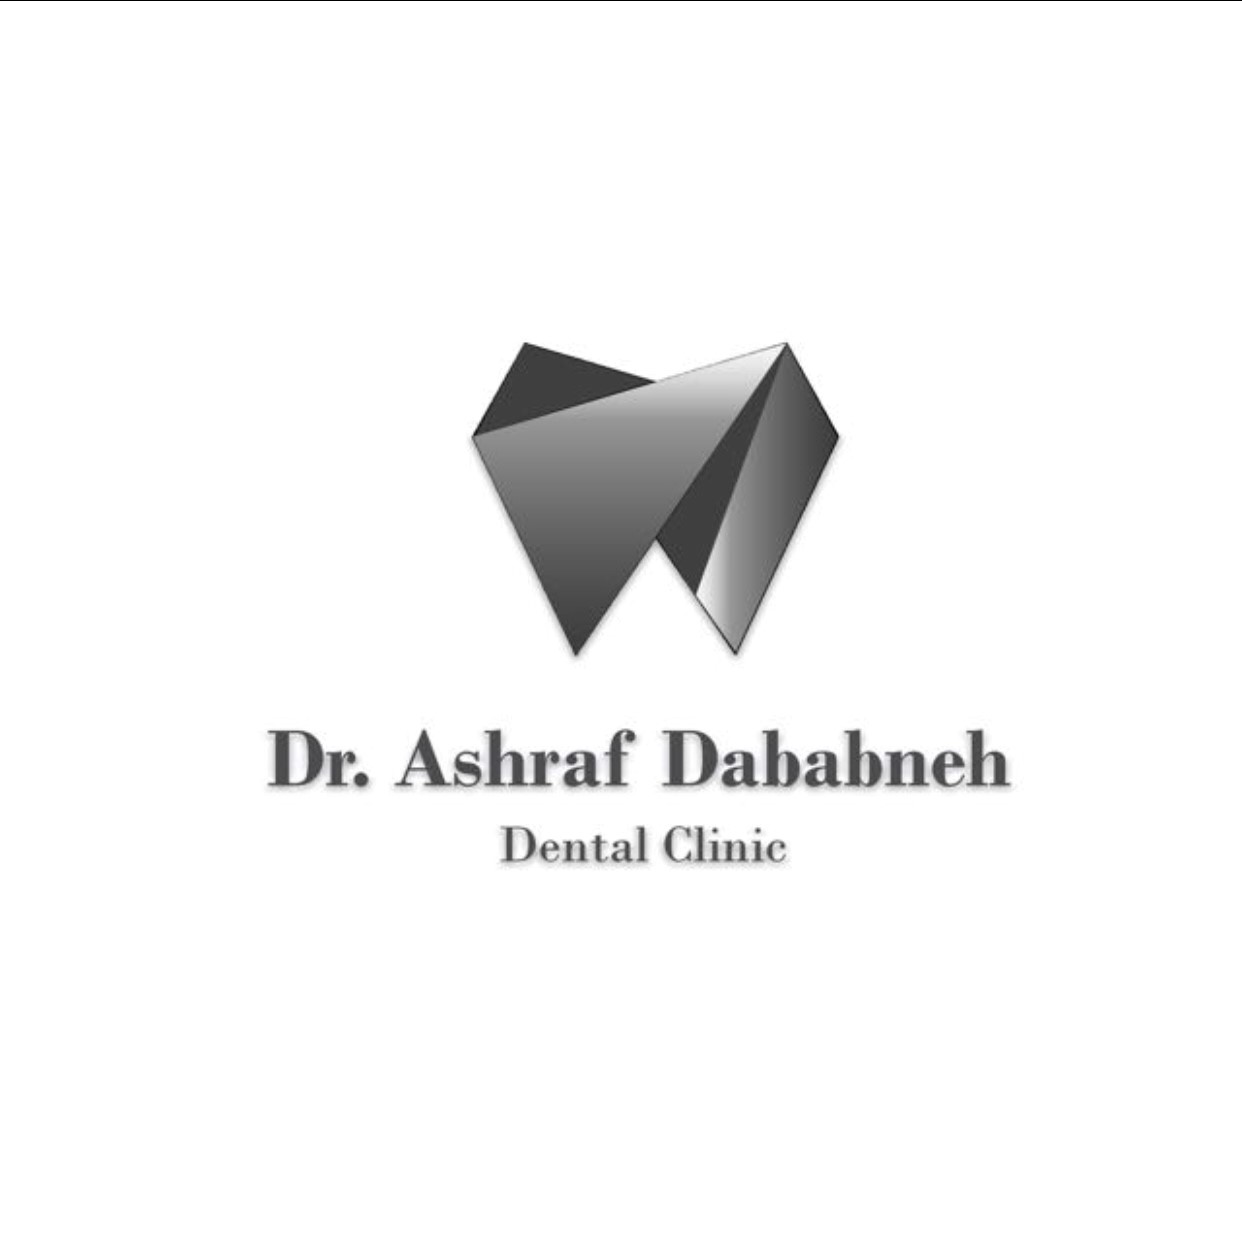 Ashraf Dbabneh